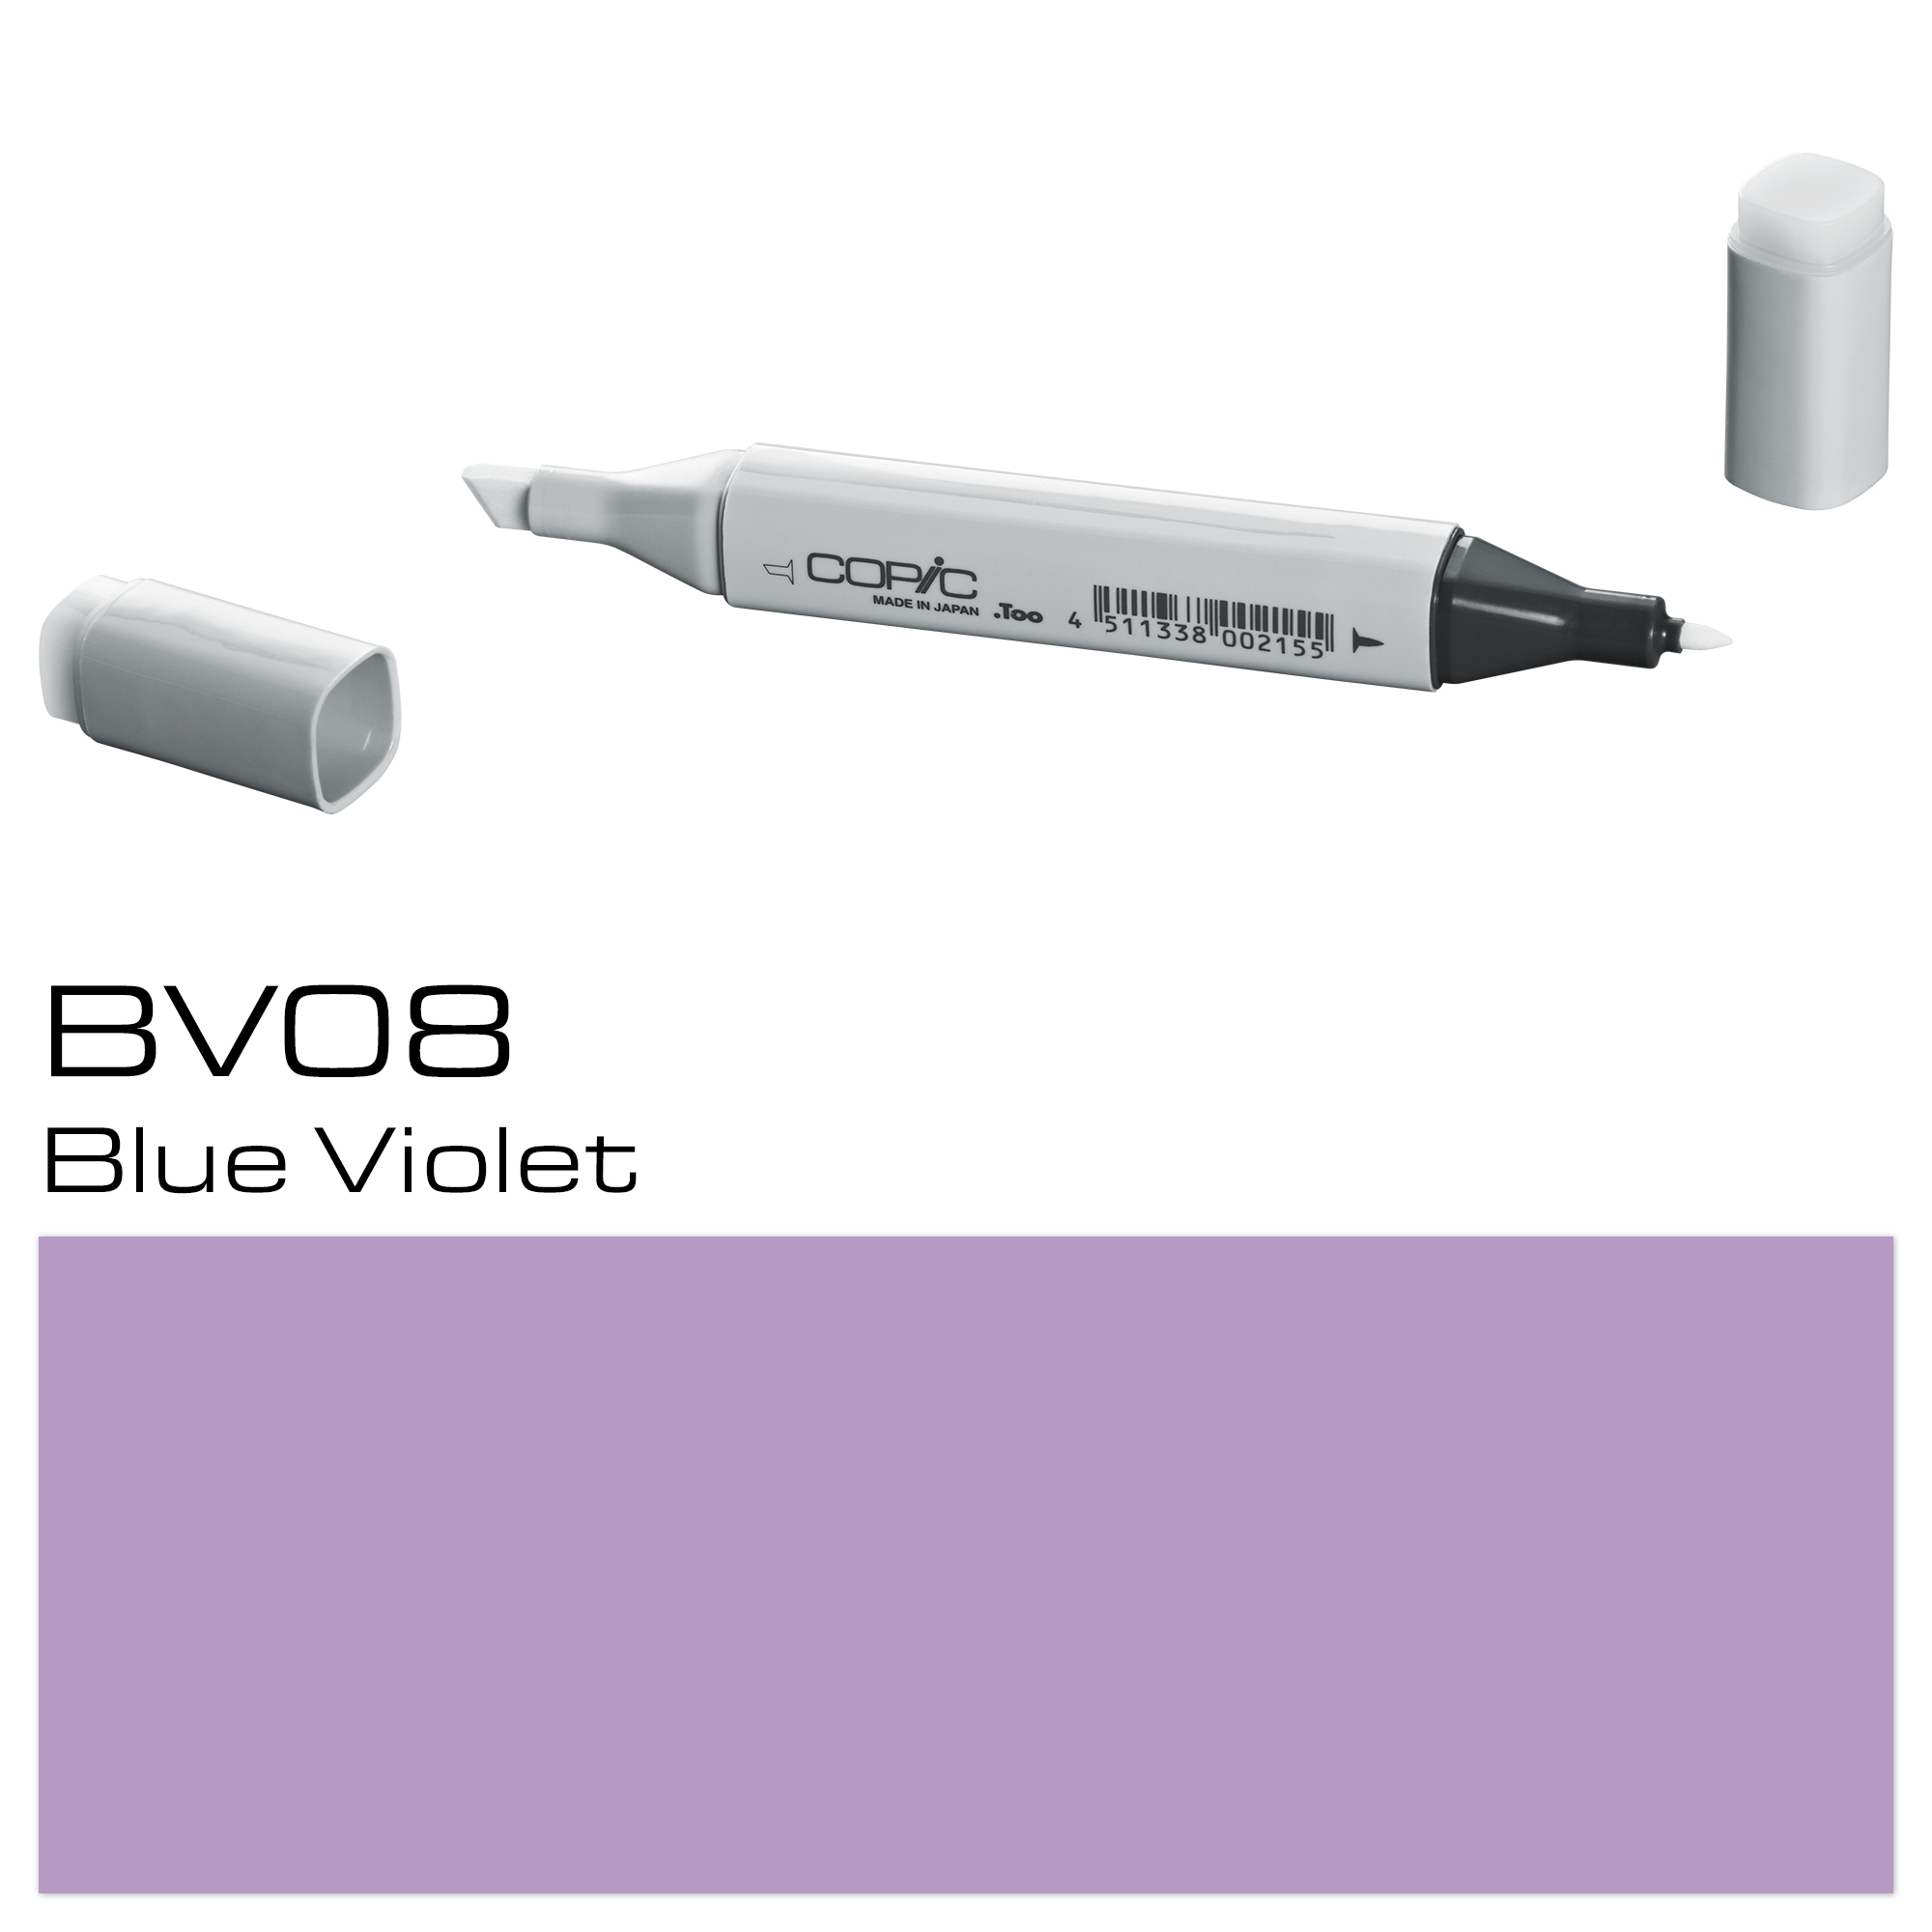 COPIC MARKER BLUE VIOLET BV08